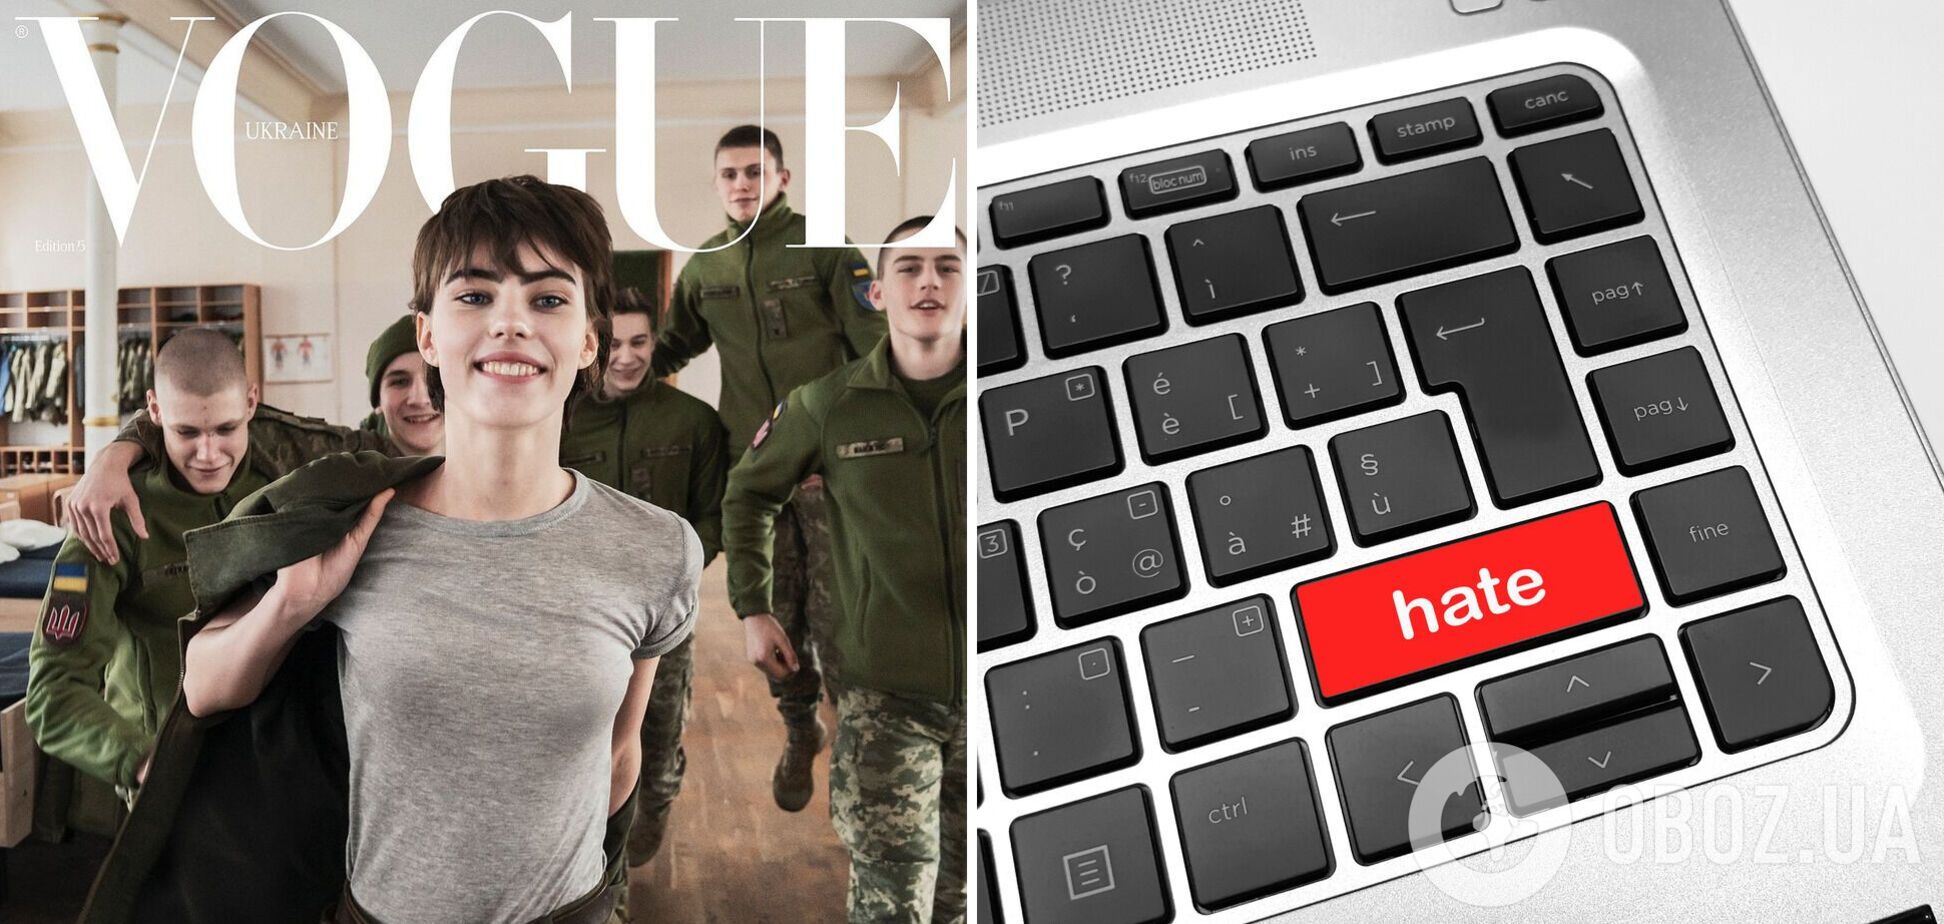 'Может, не будем делать гламур из войны?' В сети разразился скандал вокруг обложки Vogue, где модель позирует в военной форме